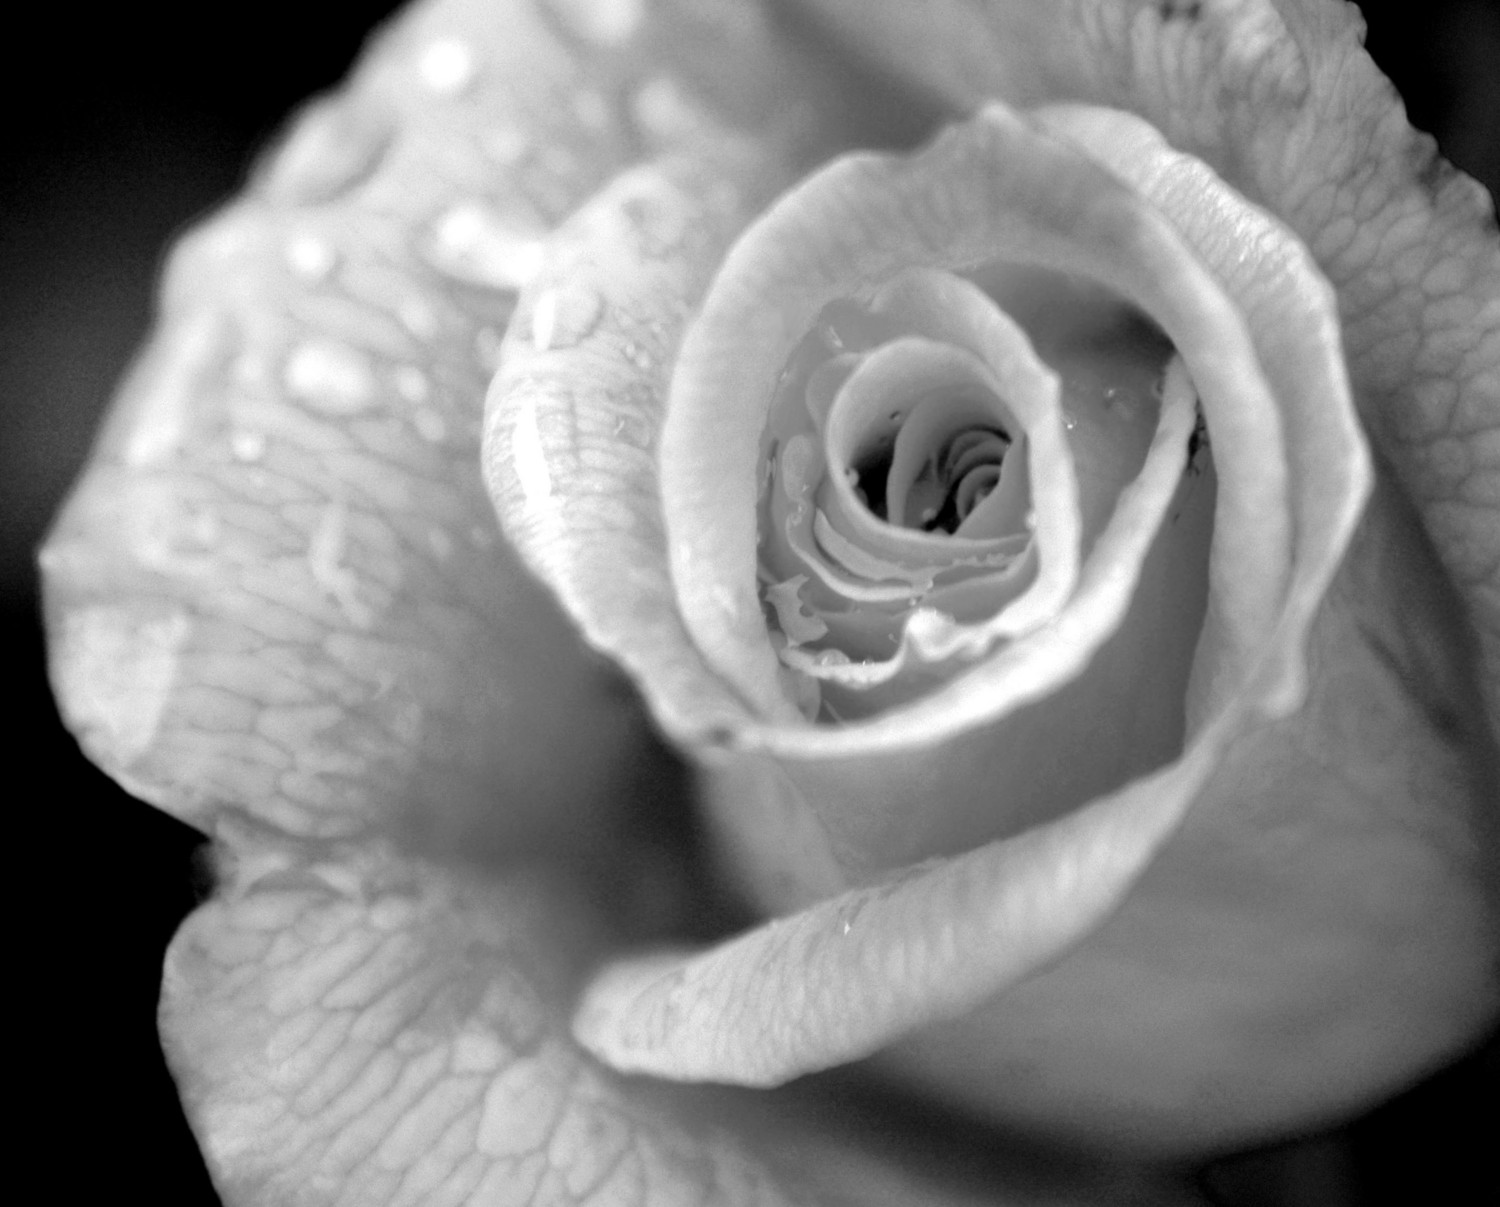 Black and White Rain Drop Rose art by paulastonebuckner on Etsy